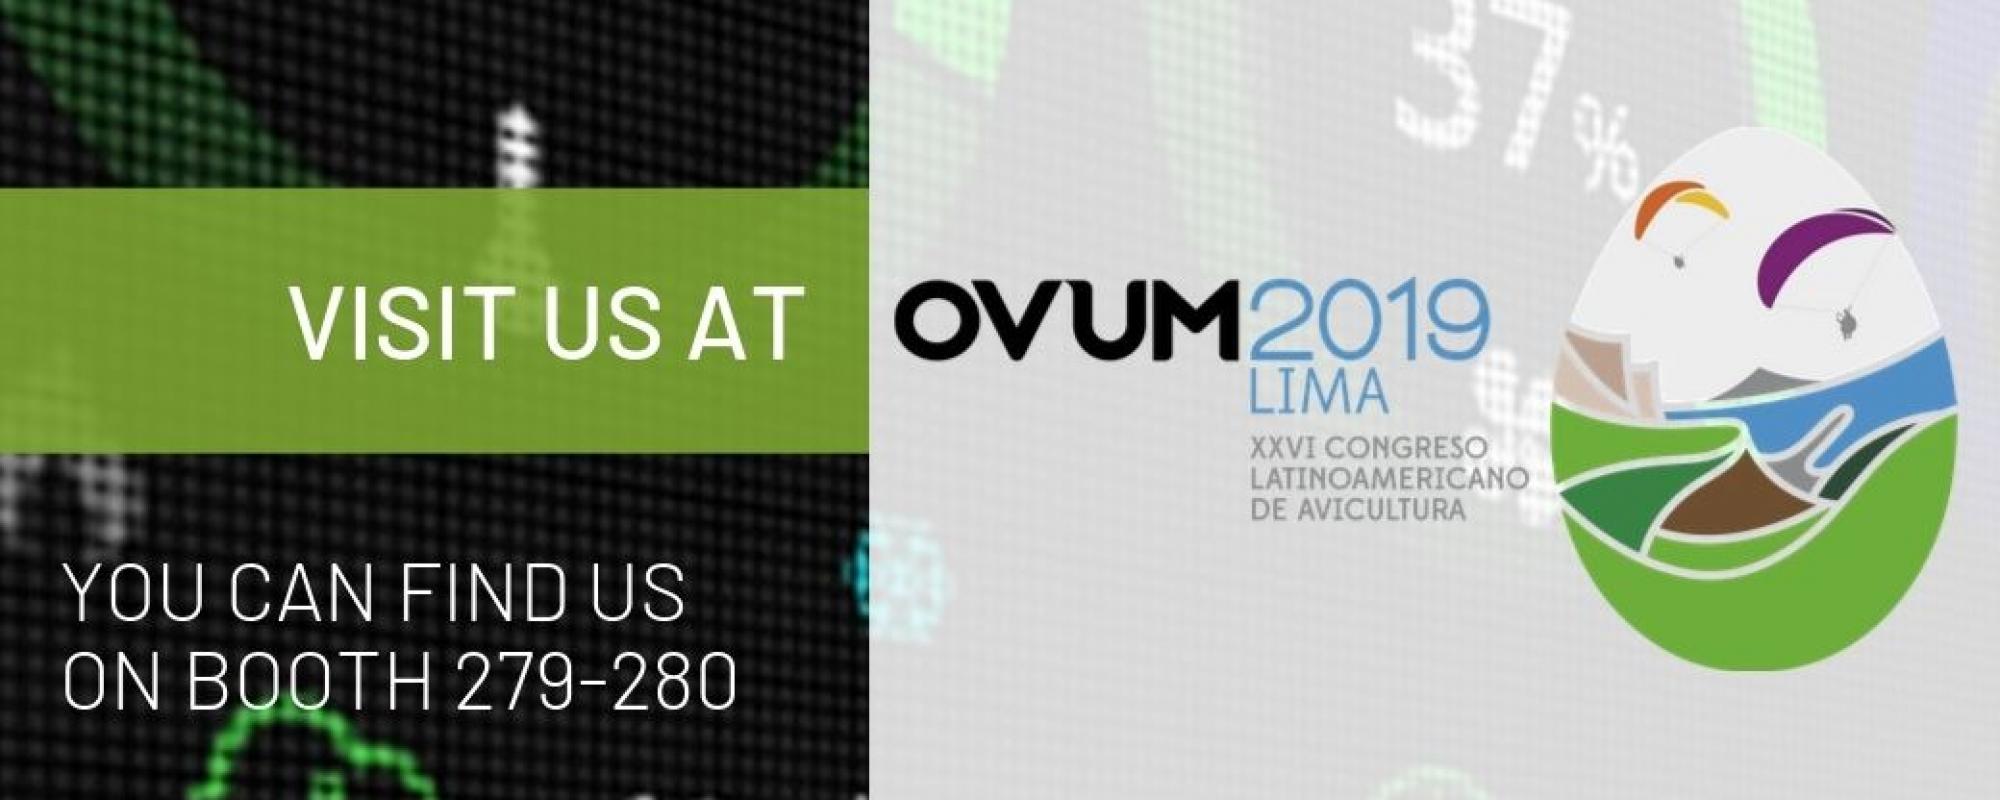 Fancom neemt deel aan OVUM 2019 in Peru